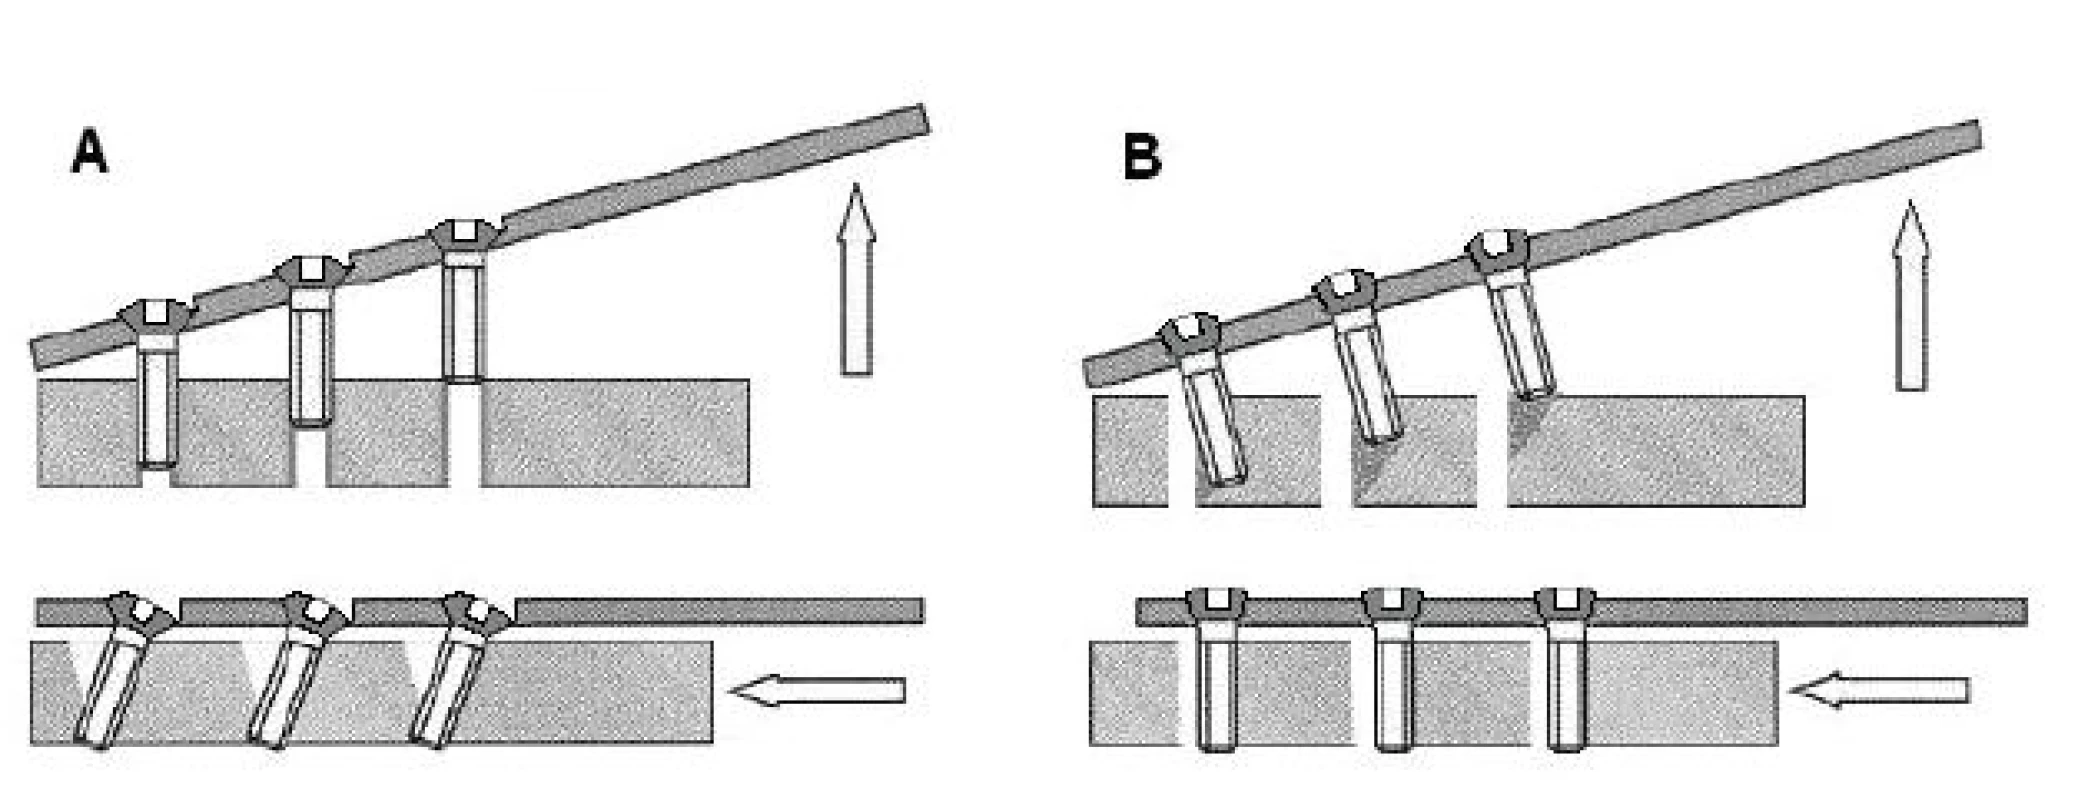 Selhávání šroubů u klasické dlahy (A) a u LCP (B) u axiálního a ohybového namáhání implantátu